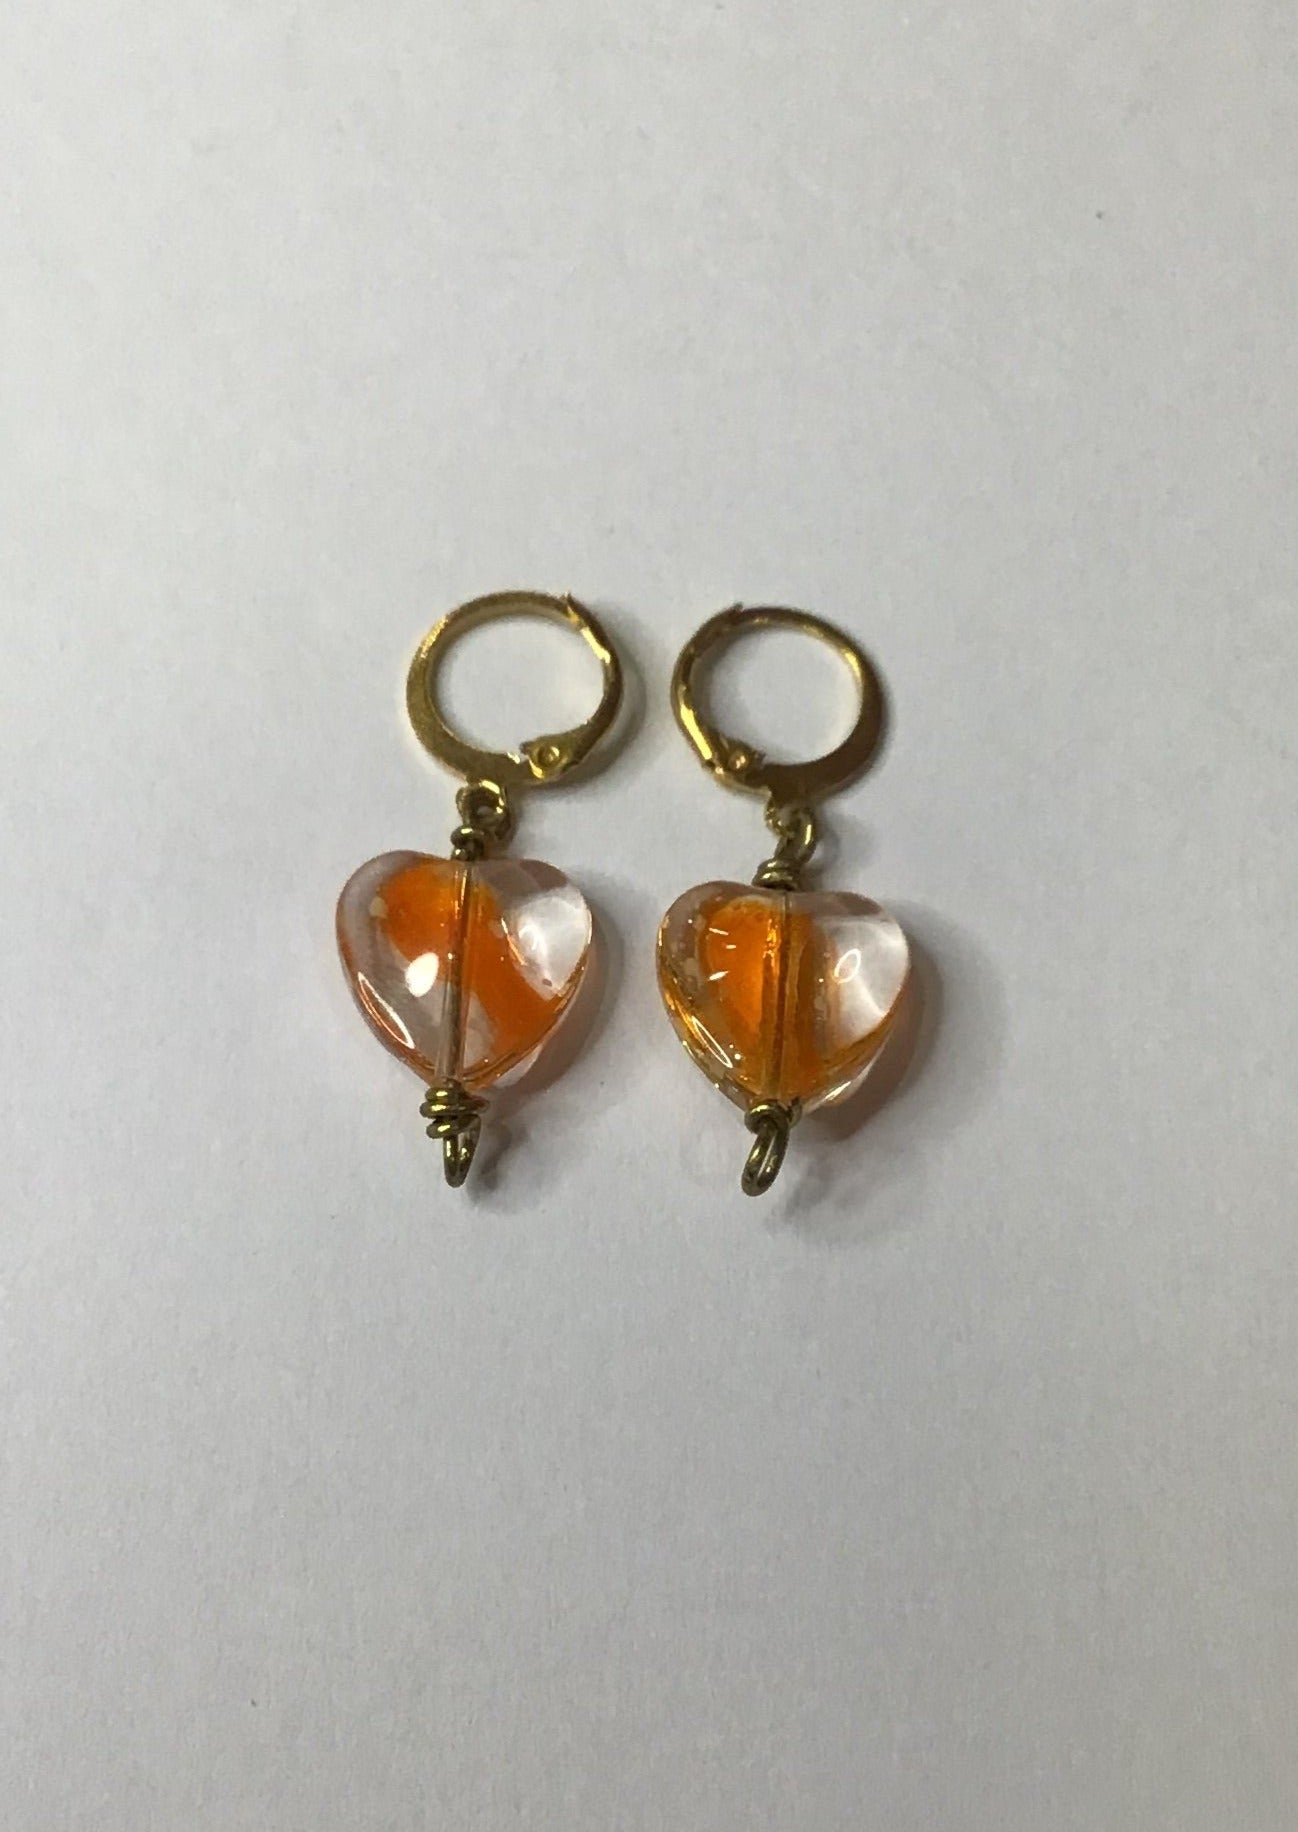 Heart Earrings with Orange Details